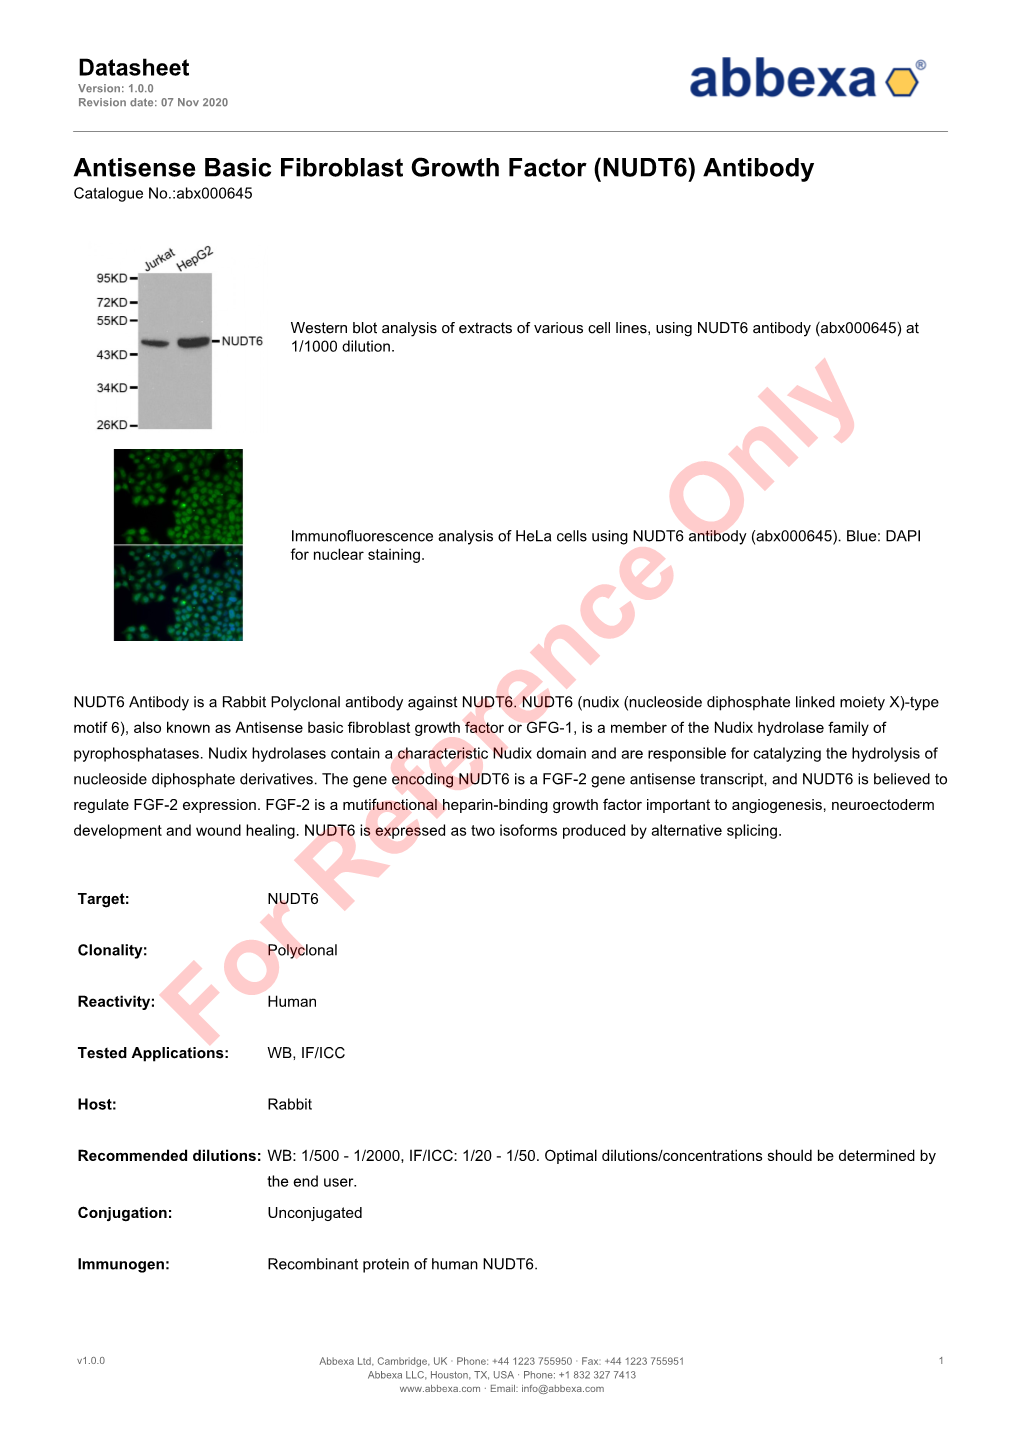 (NUDT6) Antibody Catalogue No.:Abx000645